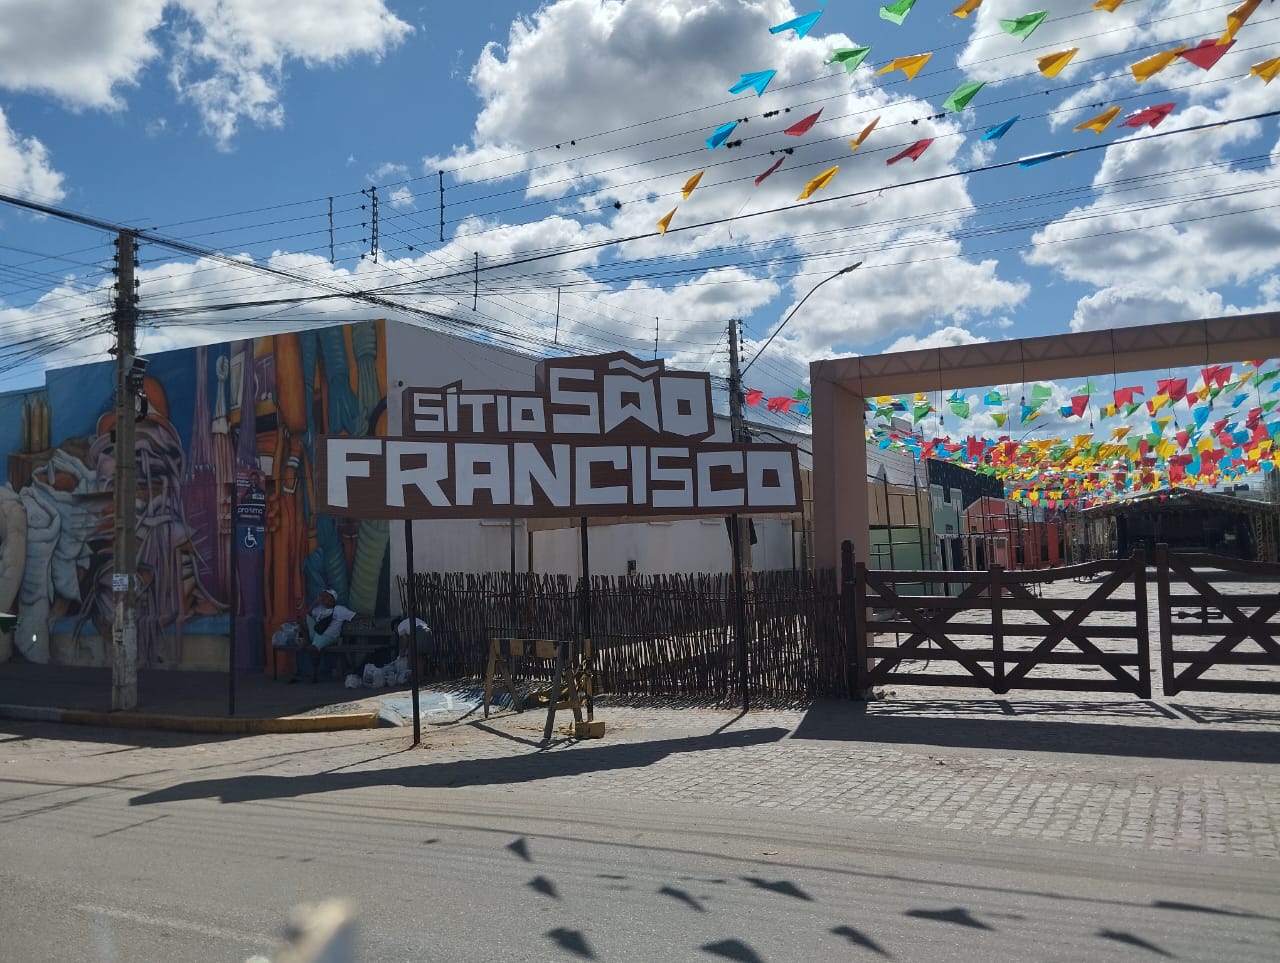 Sítio São Francisco abre as porteiras nesta quarta-feira (19) para dar início ao São João em Monteiro #CidadeForró